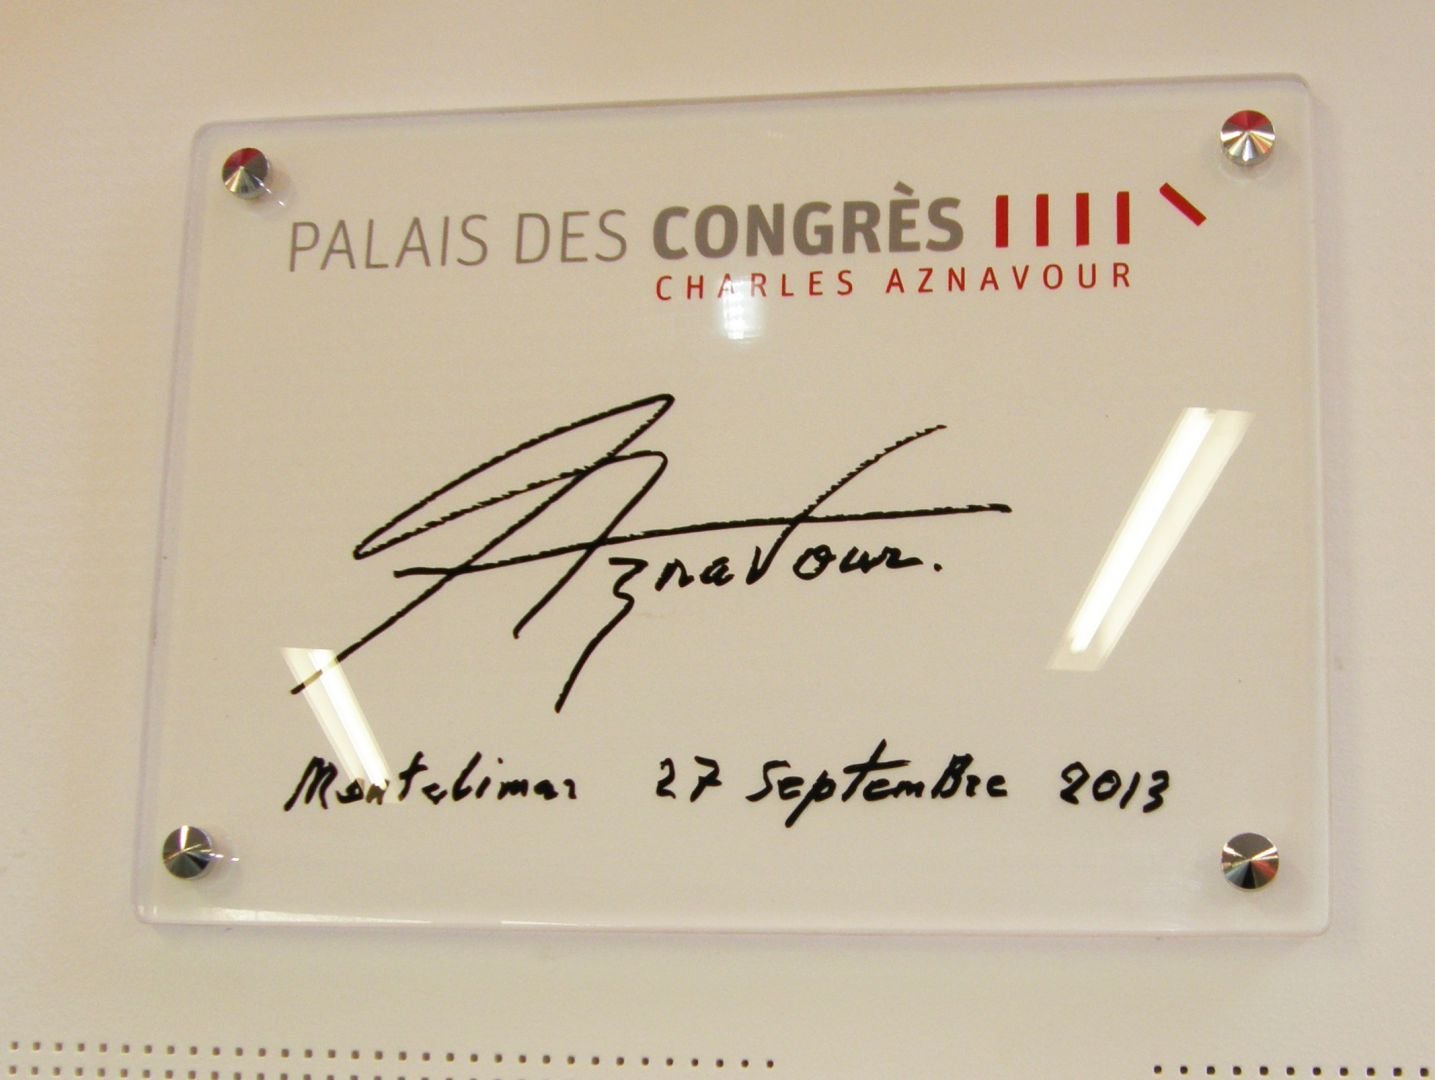 Palais des Congrès Charles Aznavour - Montélimar - Z Architecture